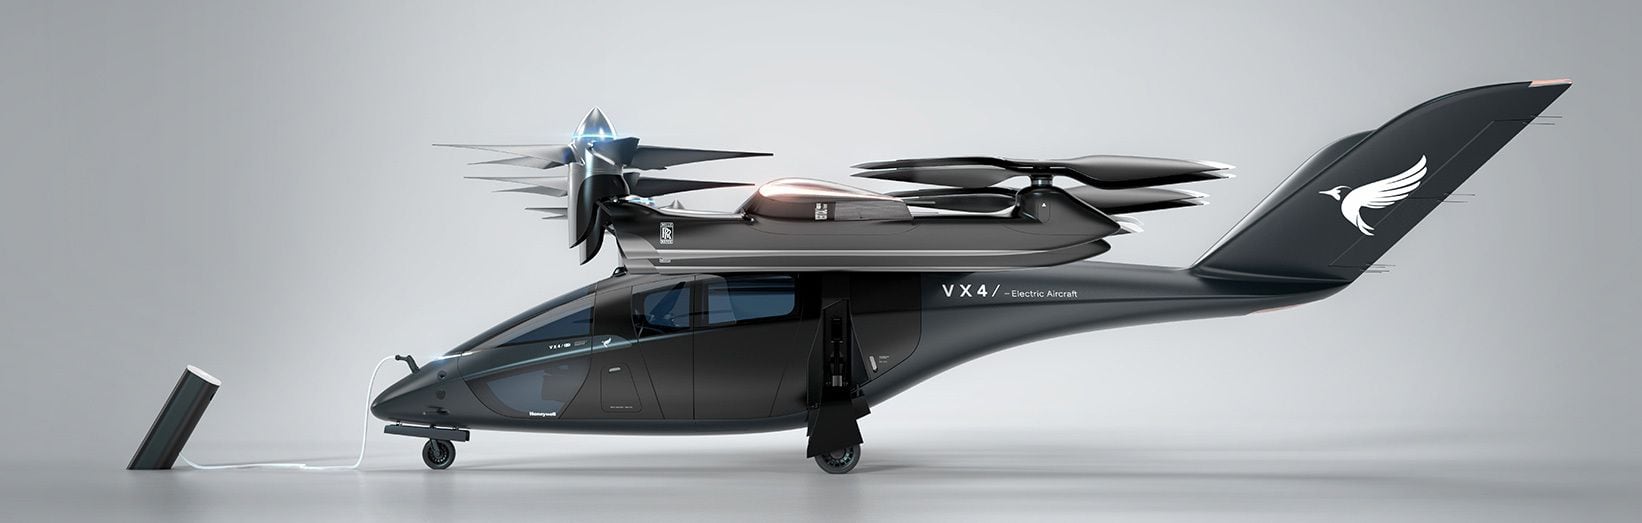 El VX4, la aeronave eléctrica de despegue y aterrizaje vertical (eVTOL) en desarrollo que es el eje del proyecto